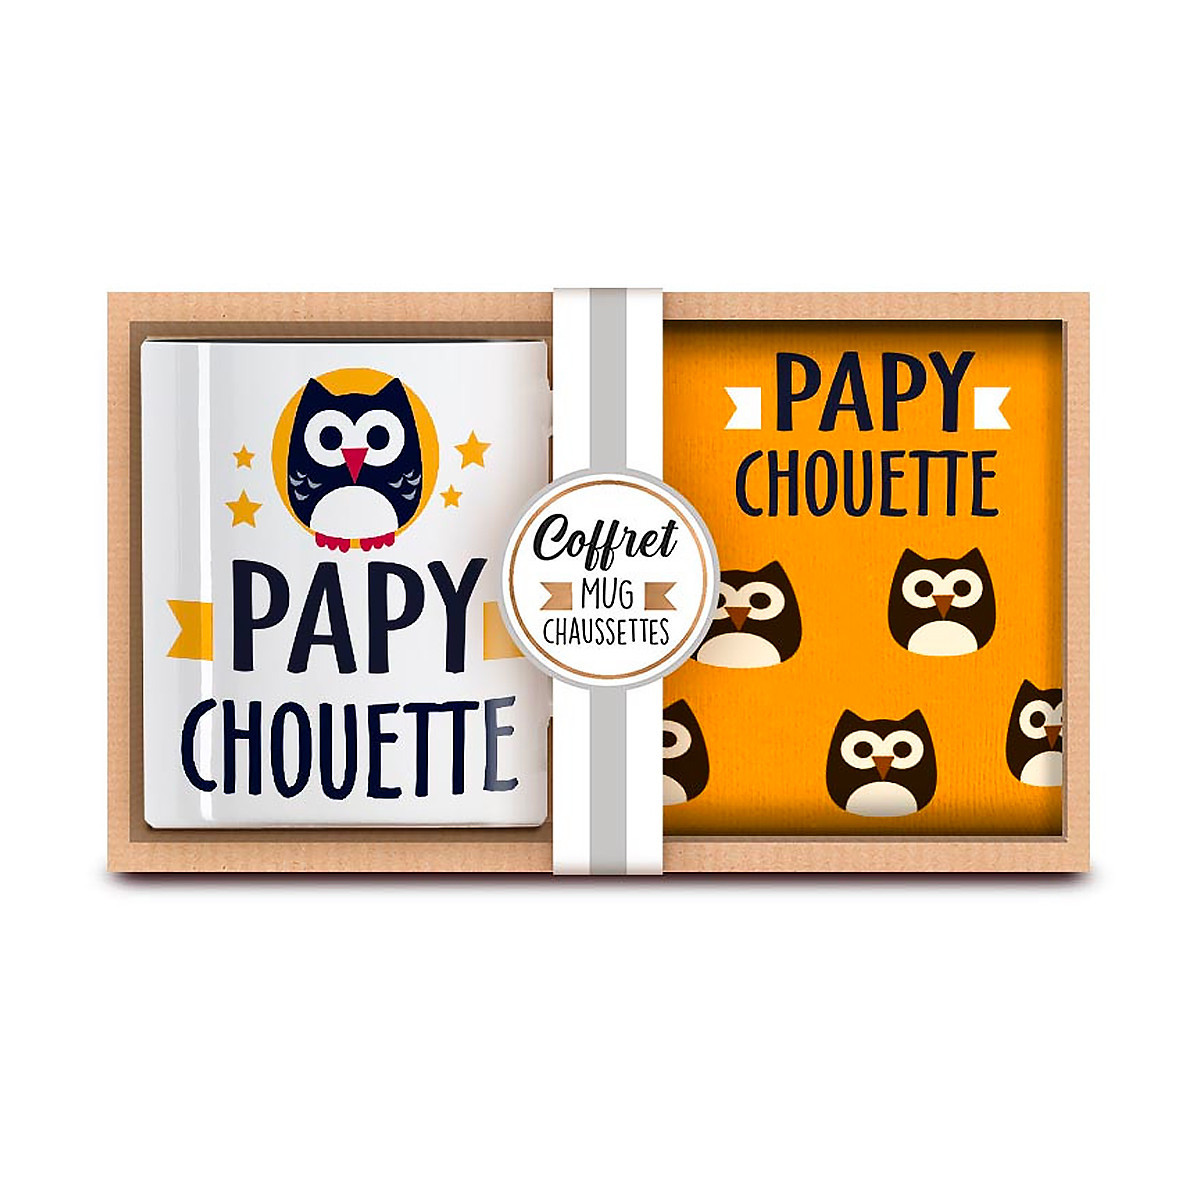 Cadeau pour grand-père : Coffret mug chaussettes Papy chouette - 9